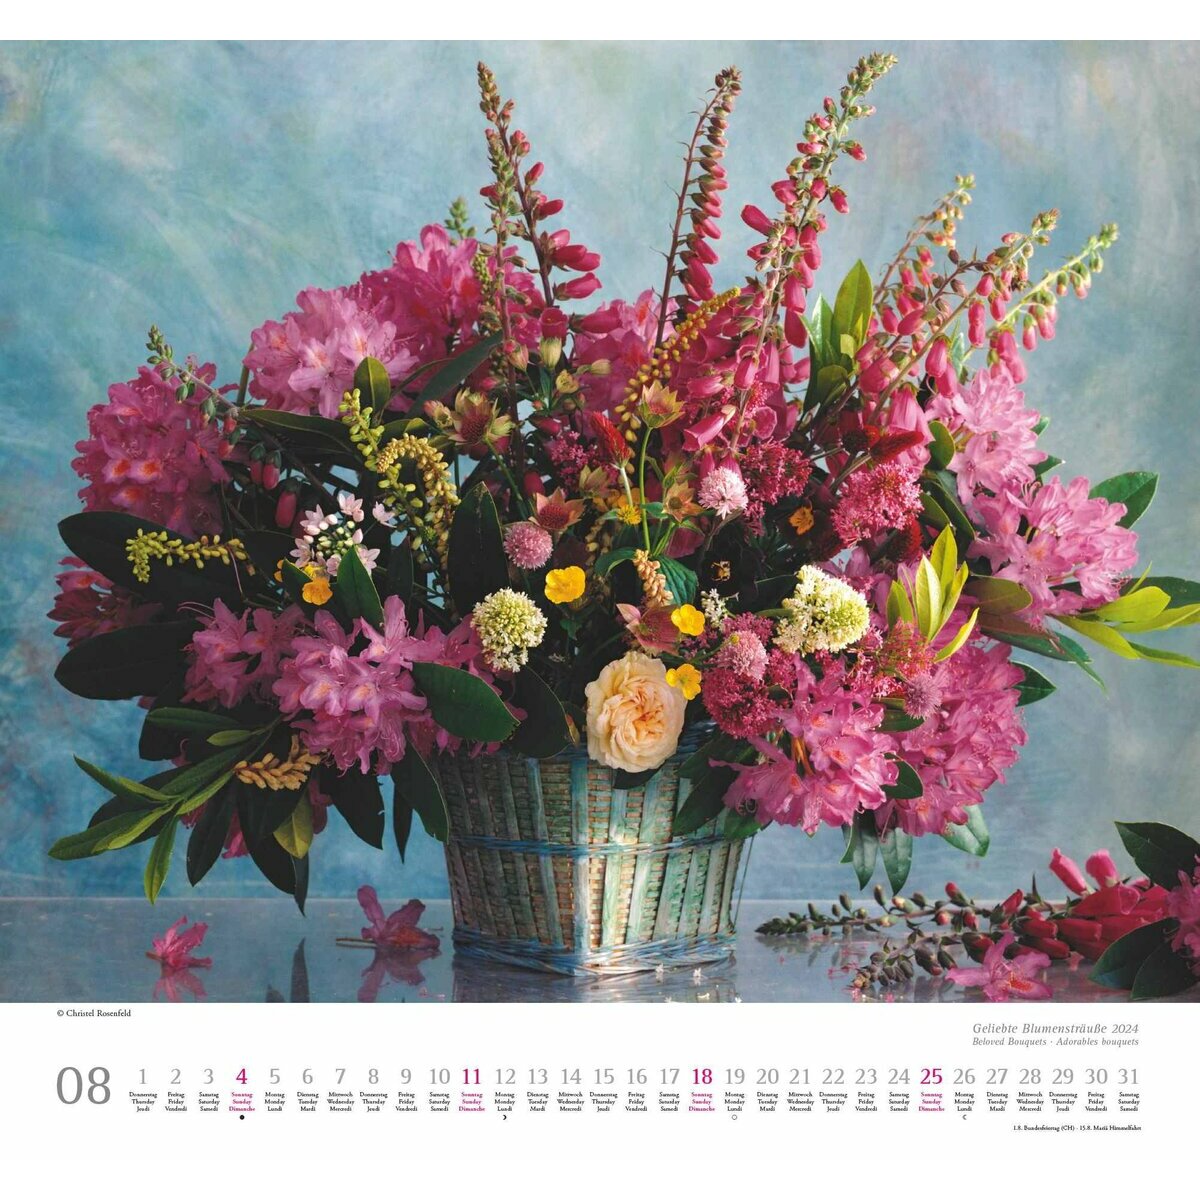 Acheter le calendrier Bouquet floral 2024 ? Rapidement et facilement en  ligne